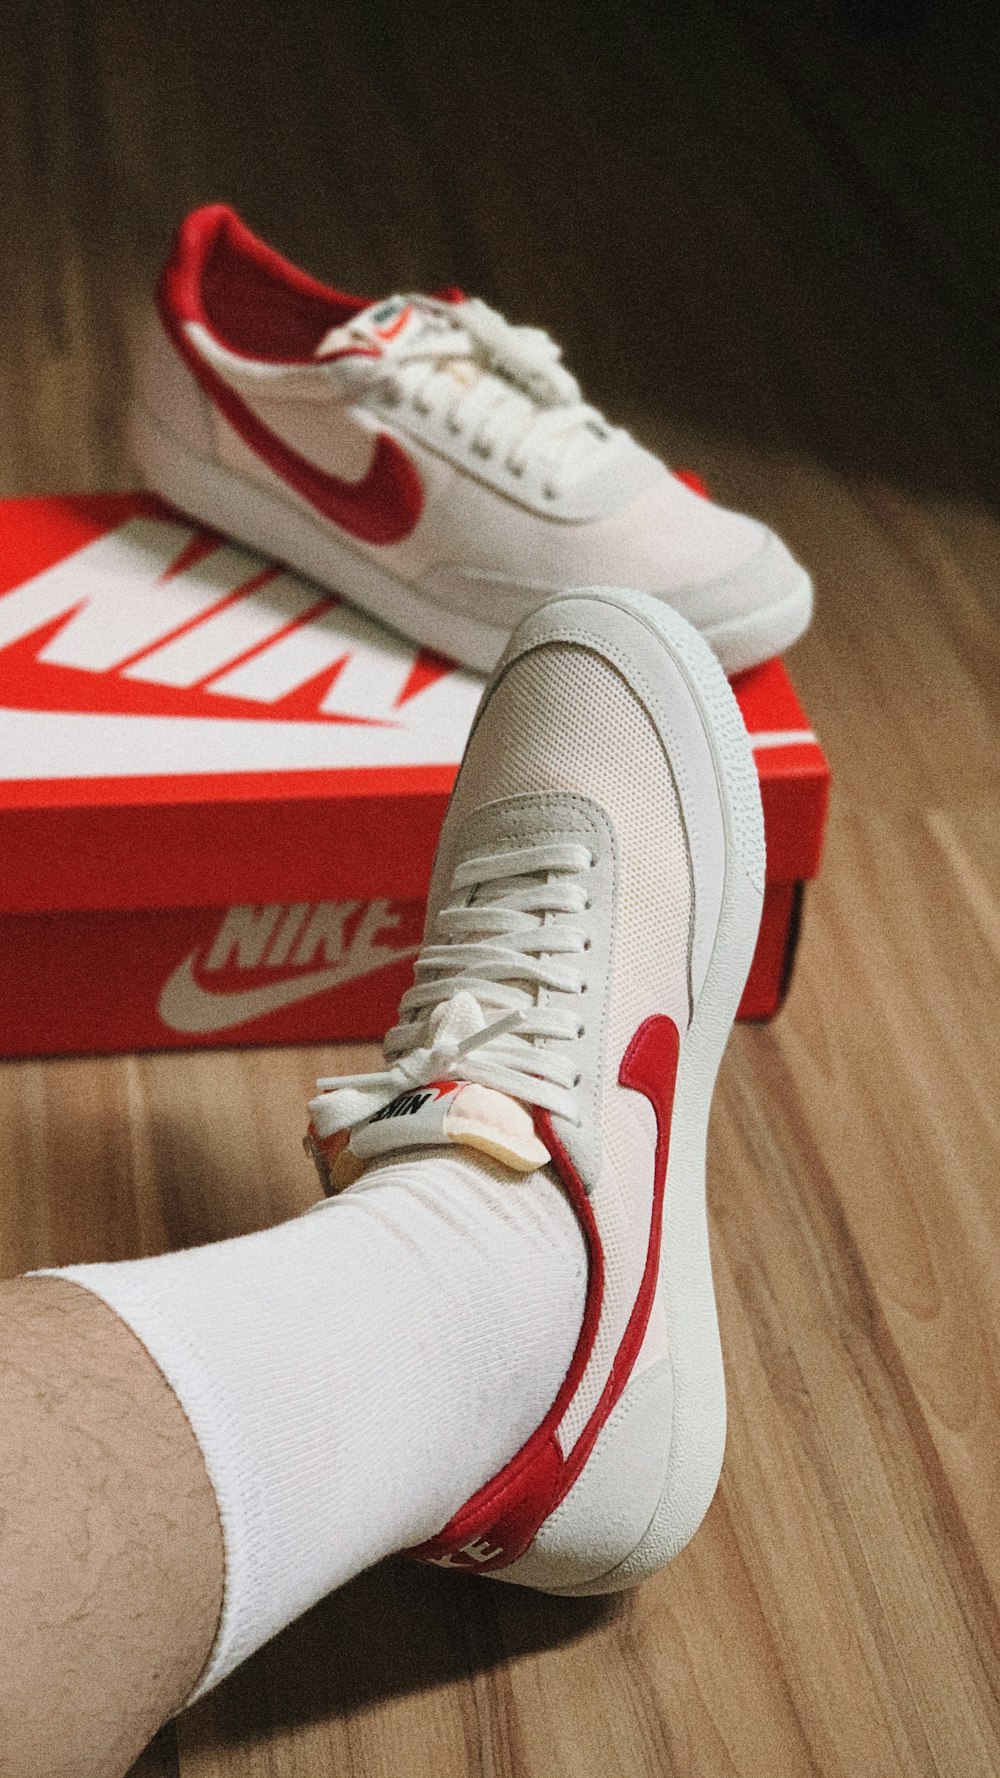 Persona con zapatillas deportivas Nike blancas y rojas